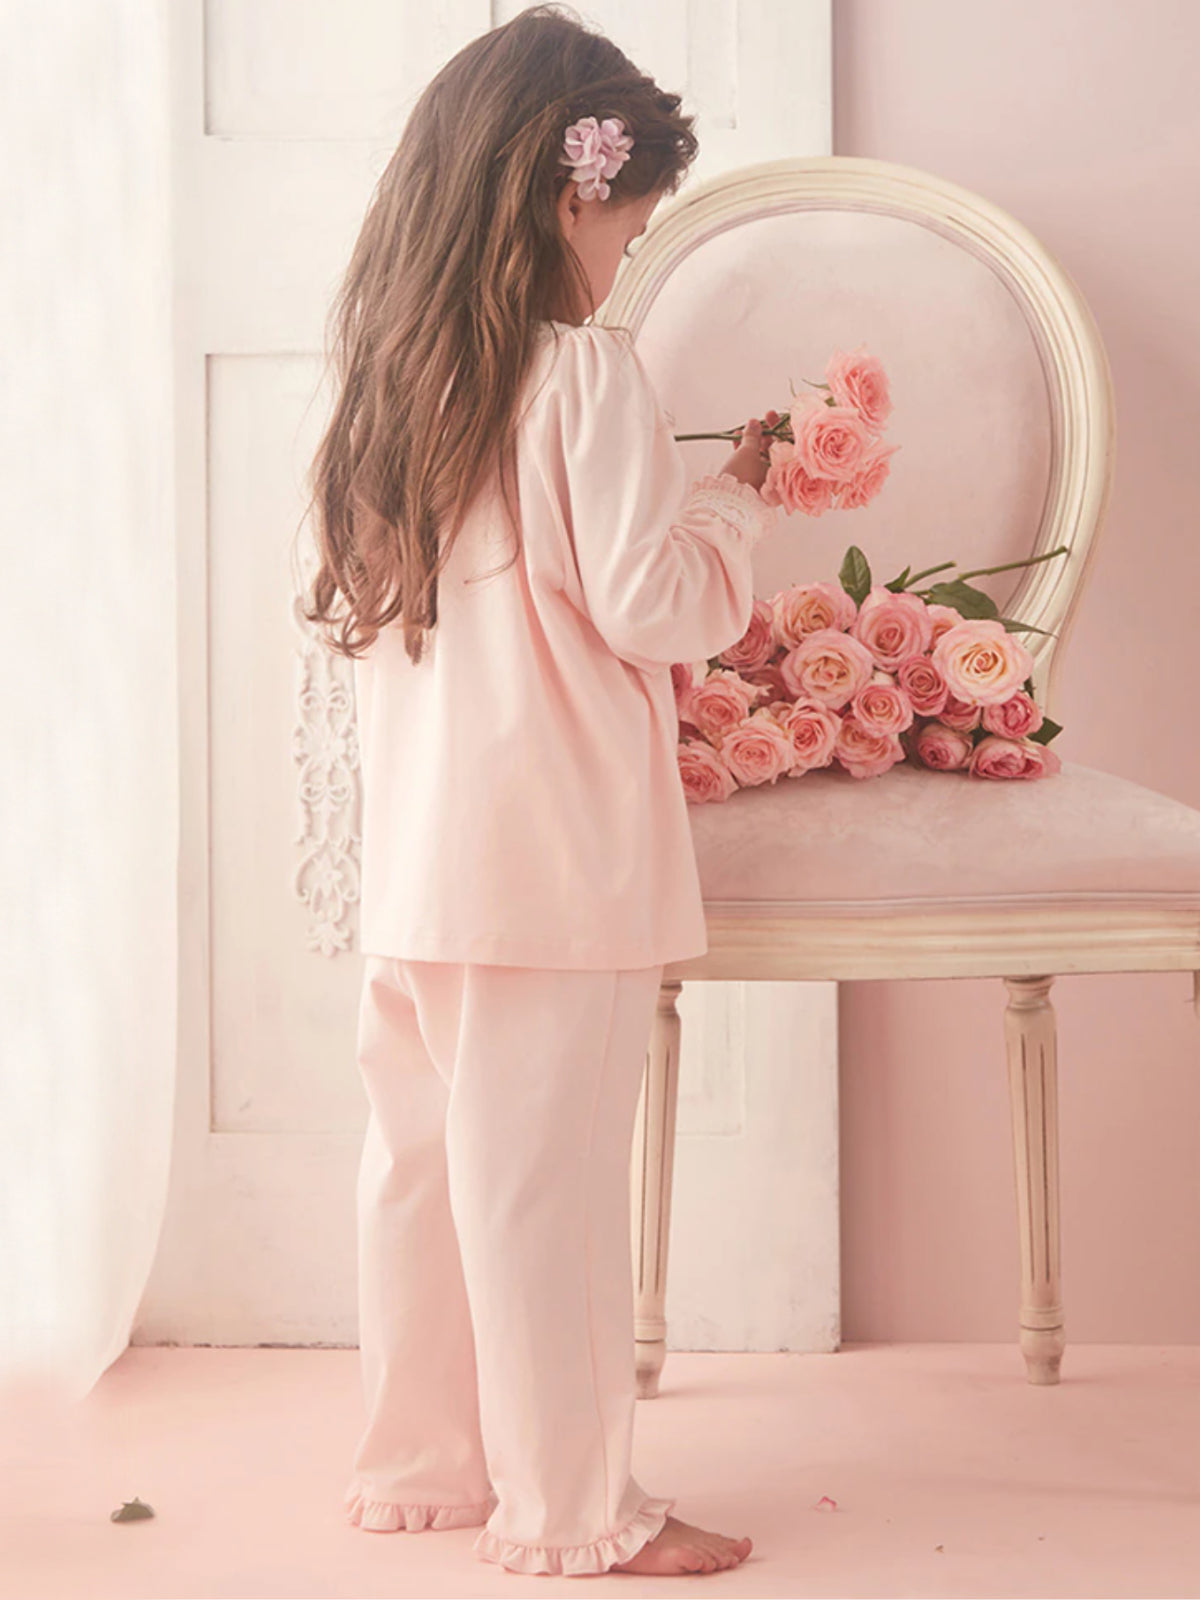 Mia Belle Girls Lace Trim Pink Pajamas | Girls Loungewear